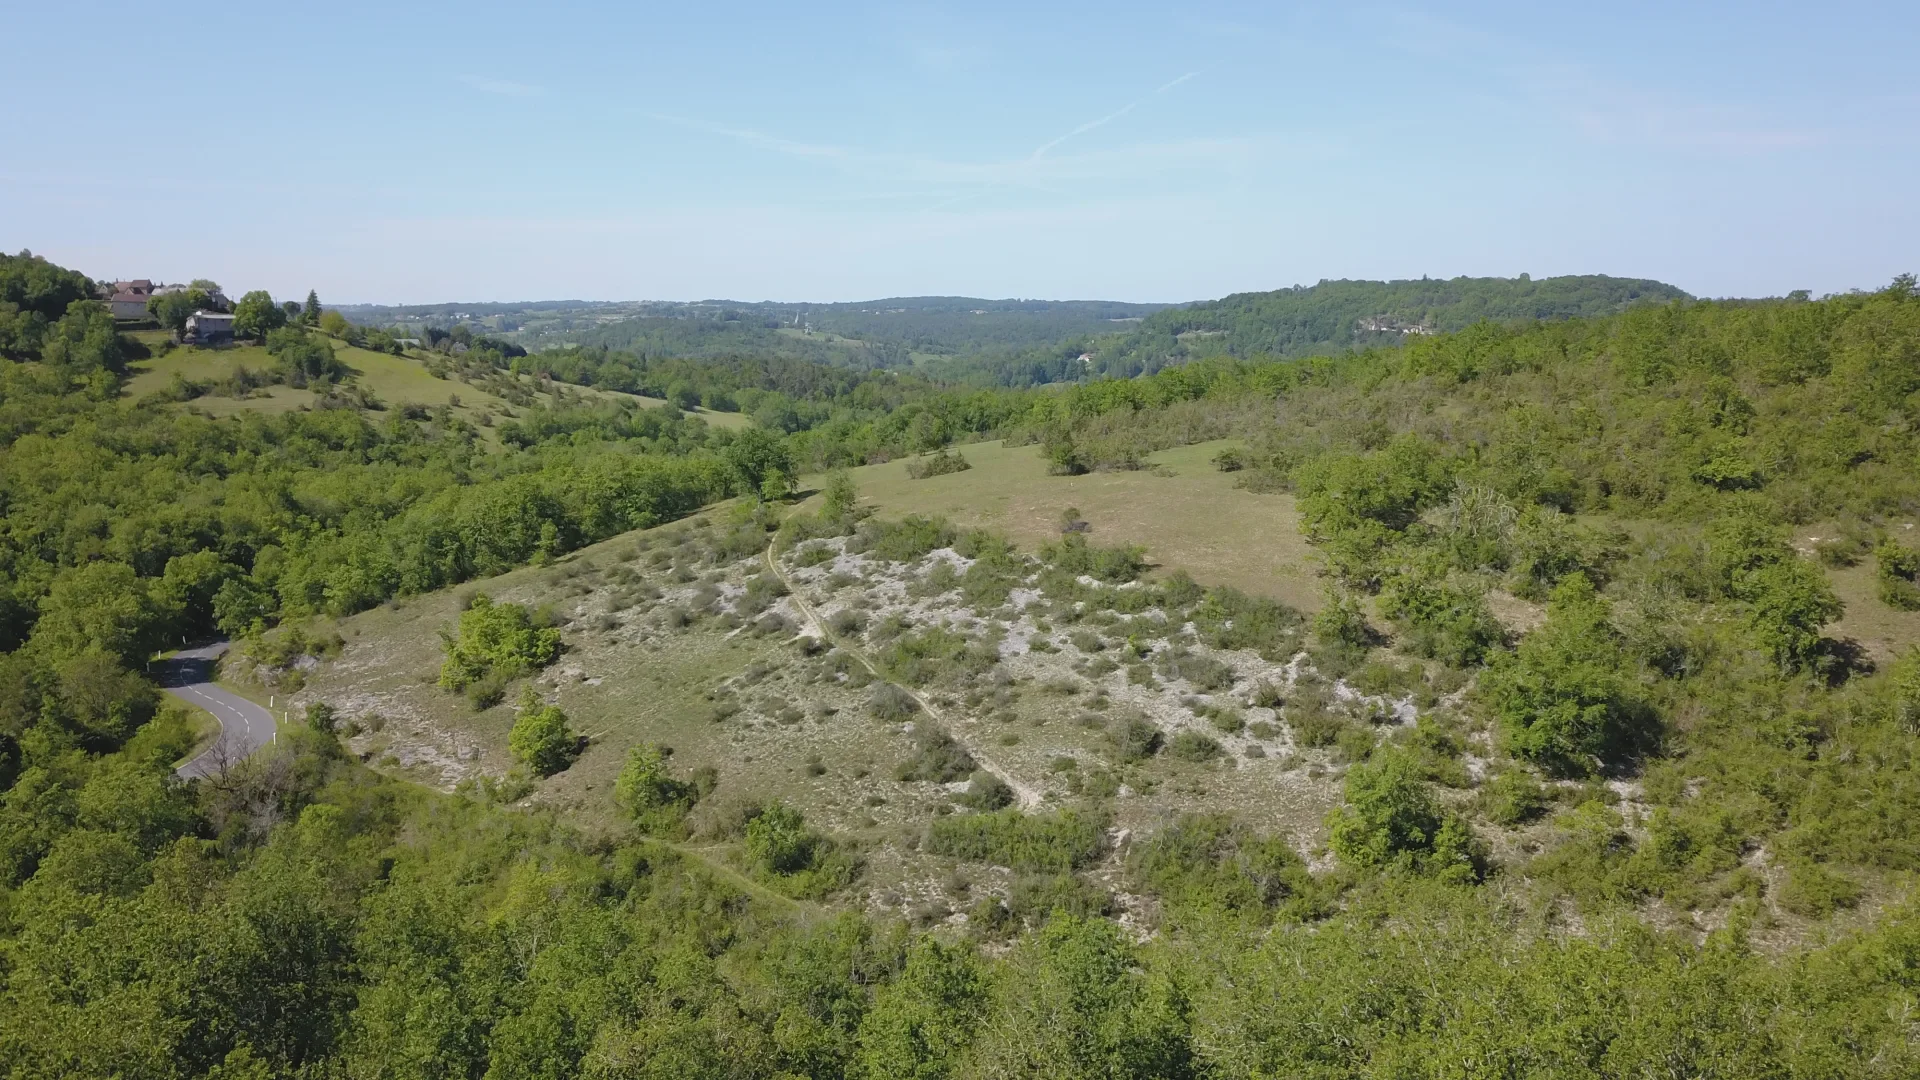 Farges site - biodiversity - Vézère valley